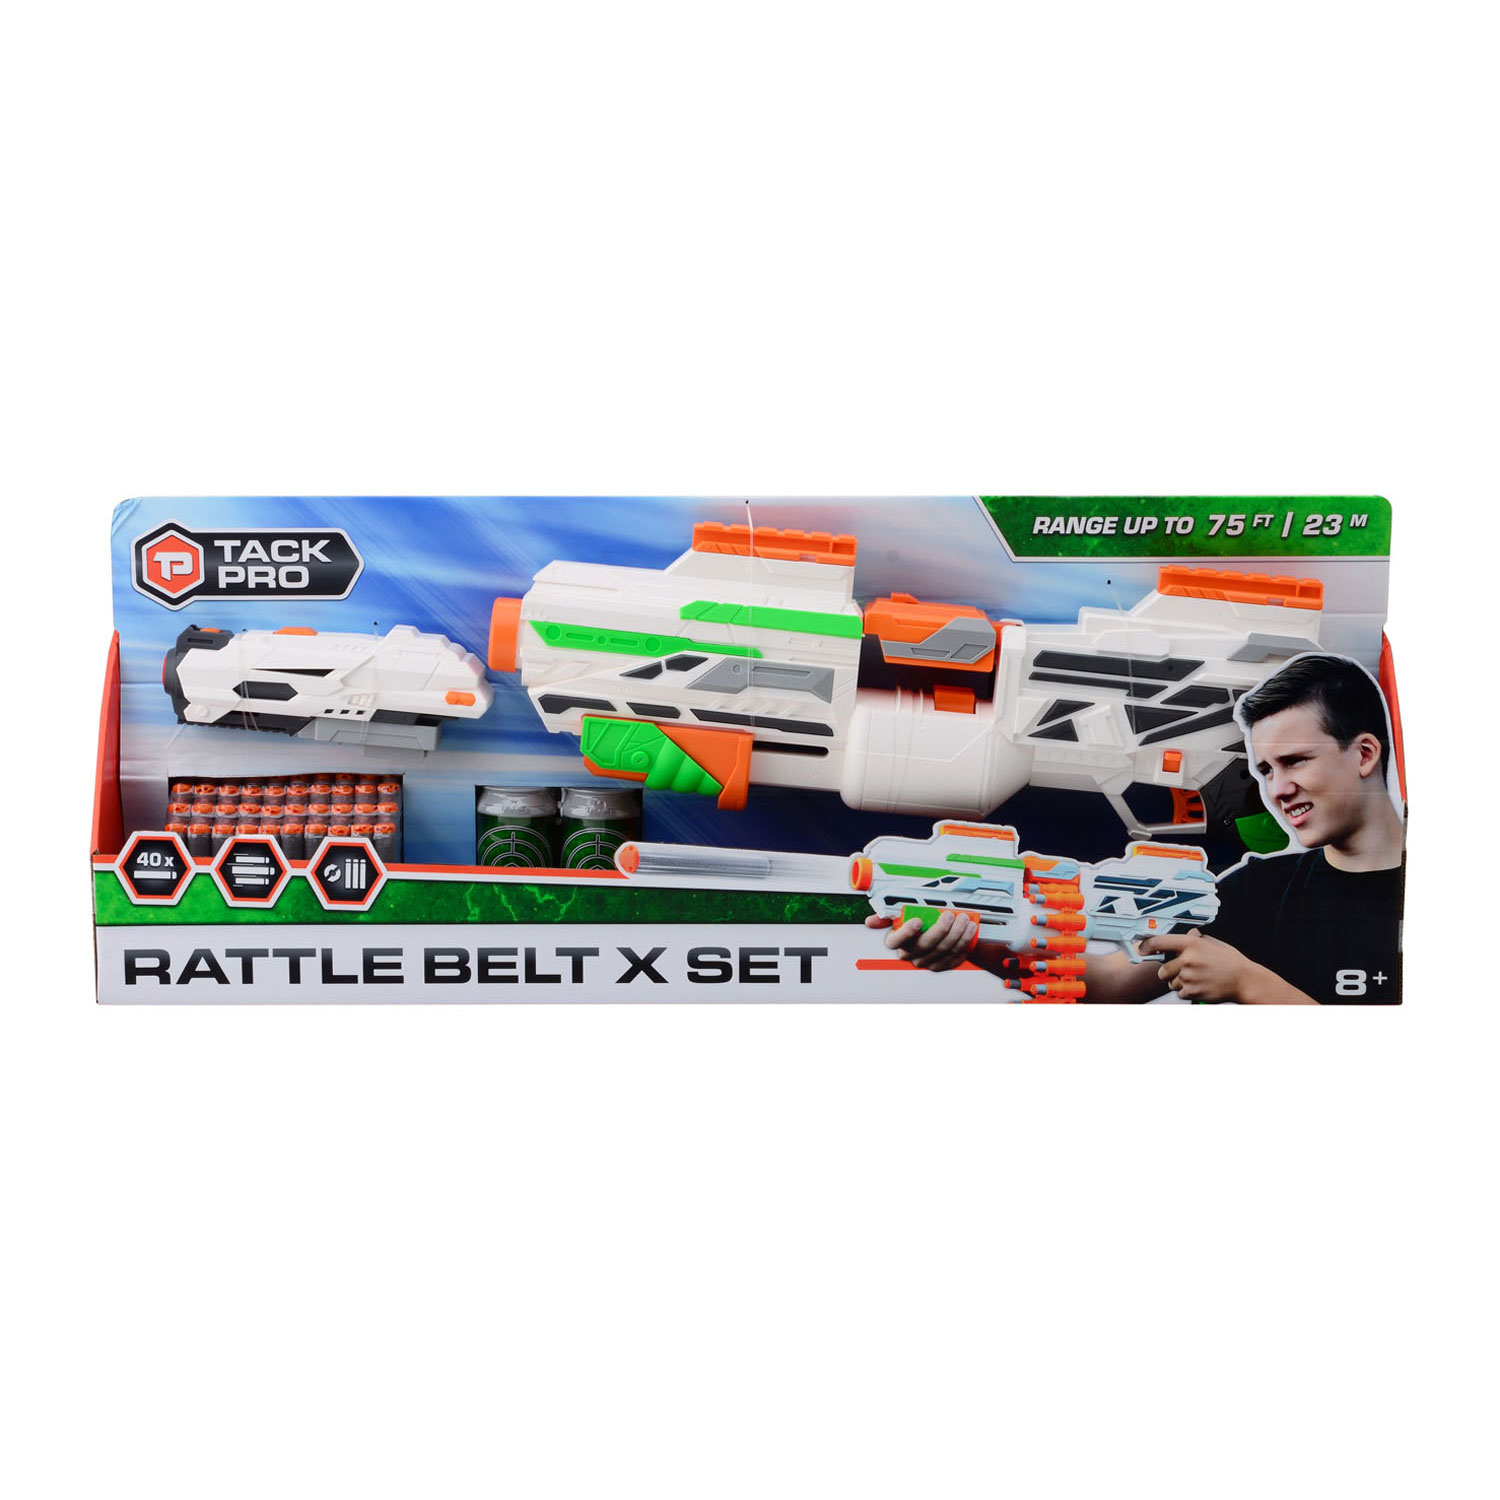 Tack Pro Rattle Belt X Set avec 40 fléchettes et accessoires